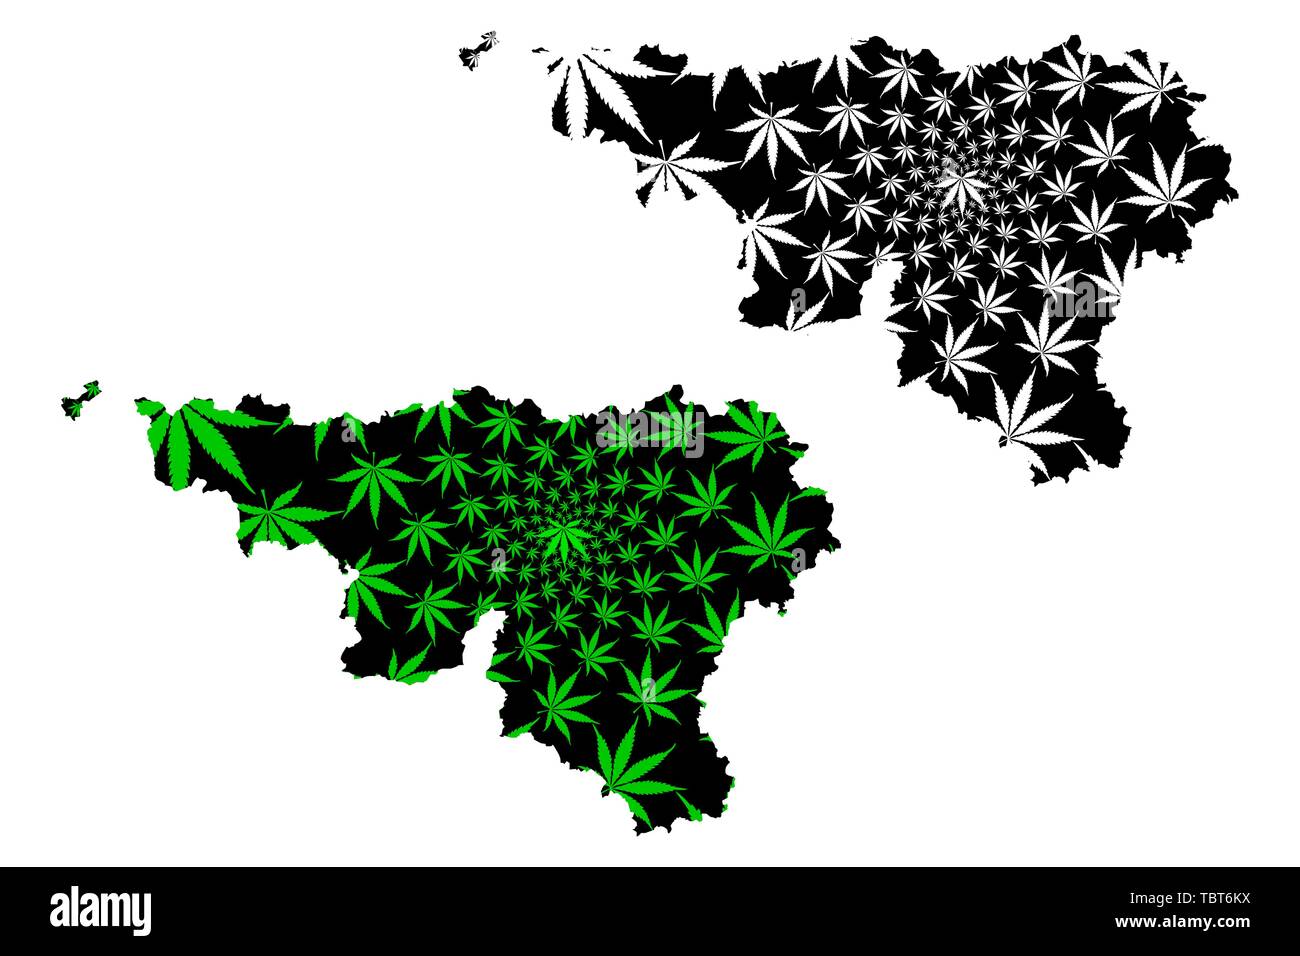 Wallonie Communaute Et Region De La Belgique Royaume De Belgique La Carte Est Concue De Feuilles De Cannabis Vert Et Noir Wallonie Carte Fait De La Marijuana Marihuan Image Vectorielle Stock